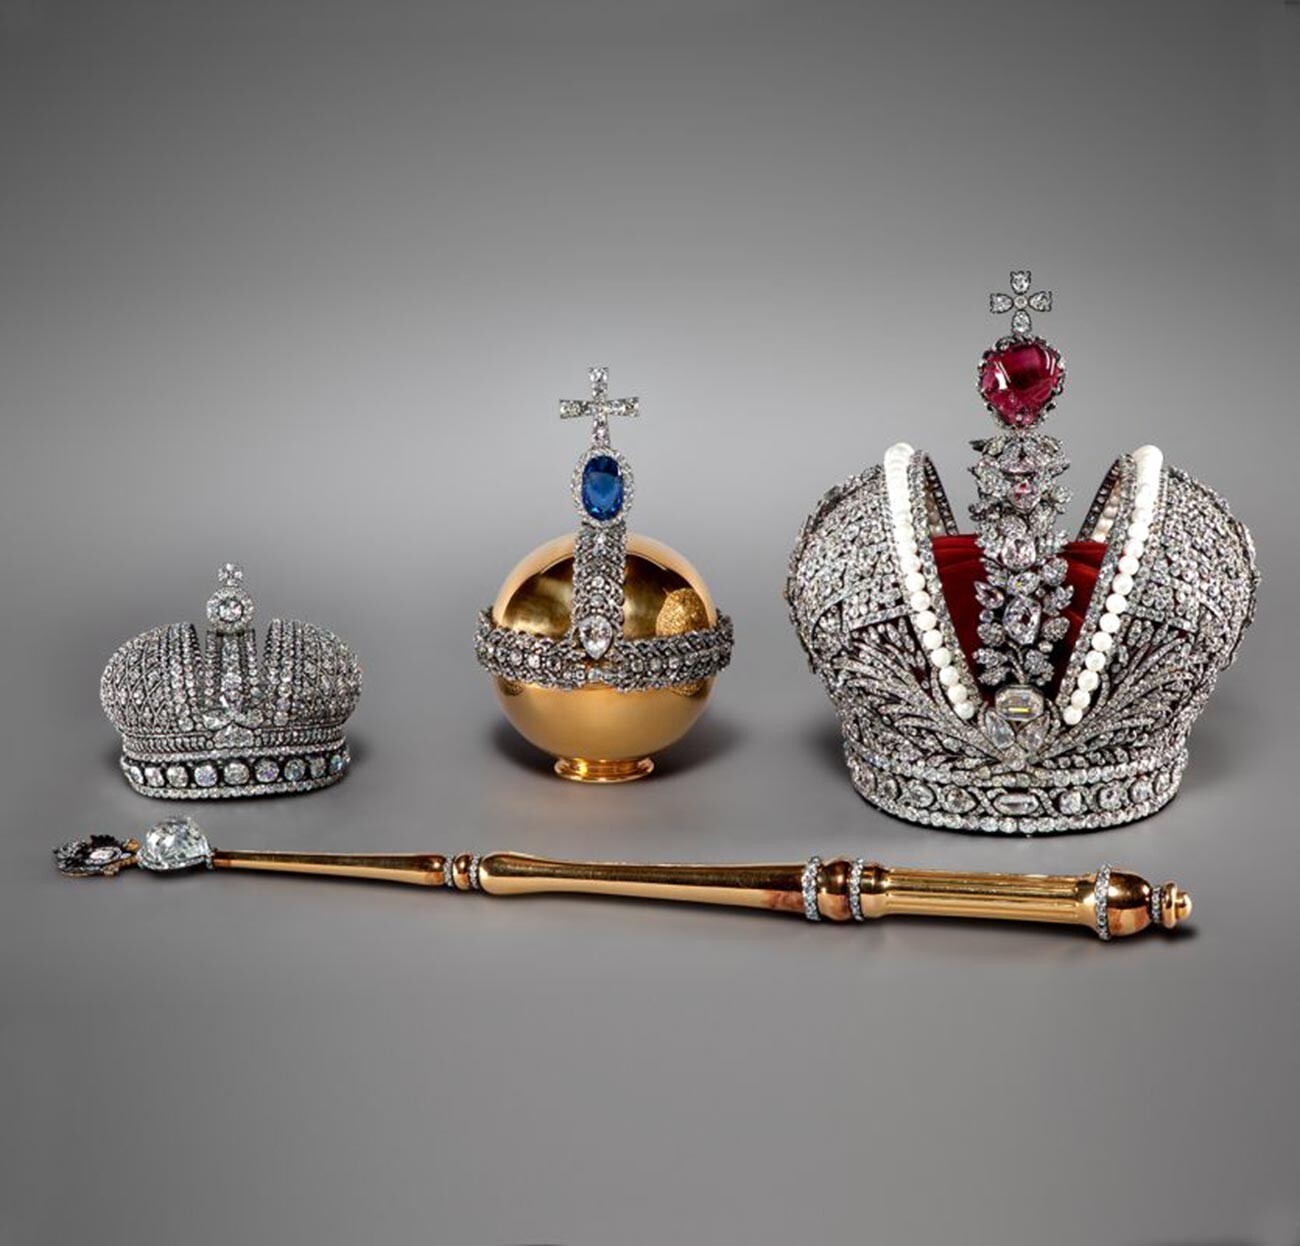 Regalos de coronación de los zares rusos de la colección de los Museos del Kremlin de Moscú

